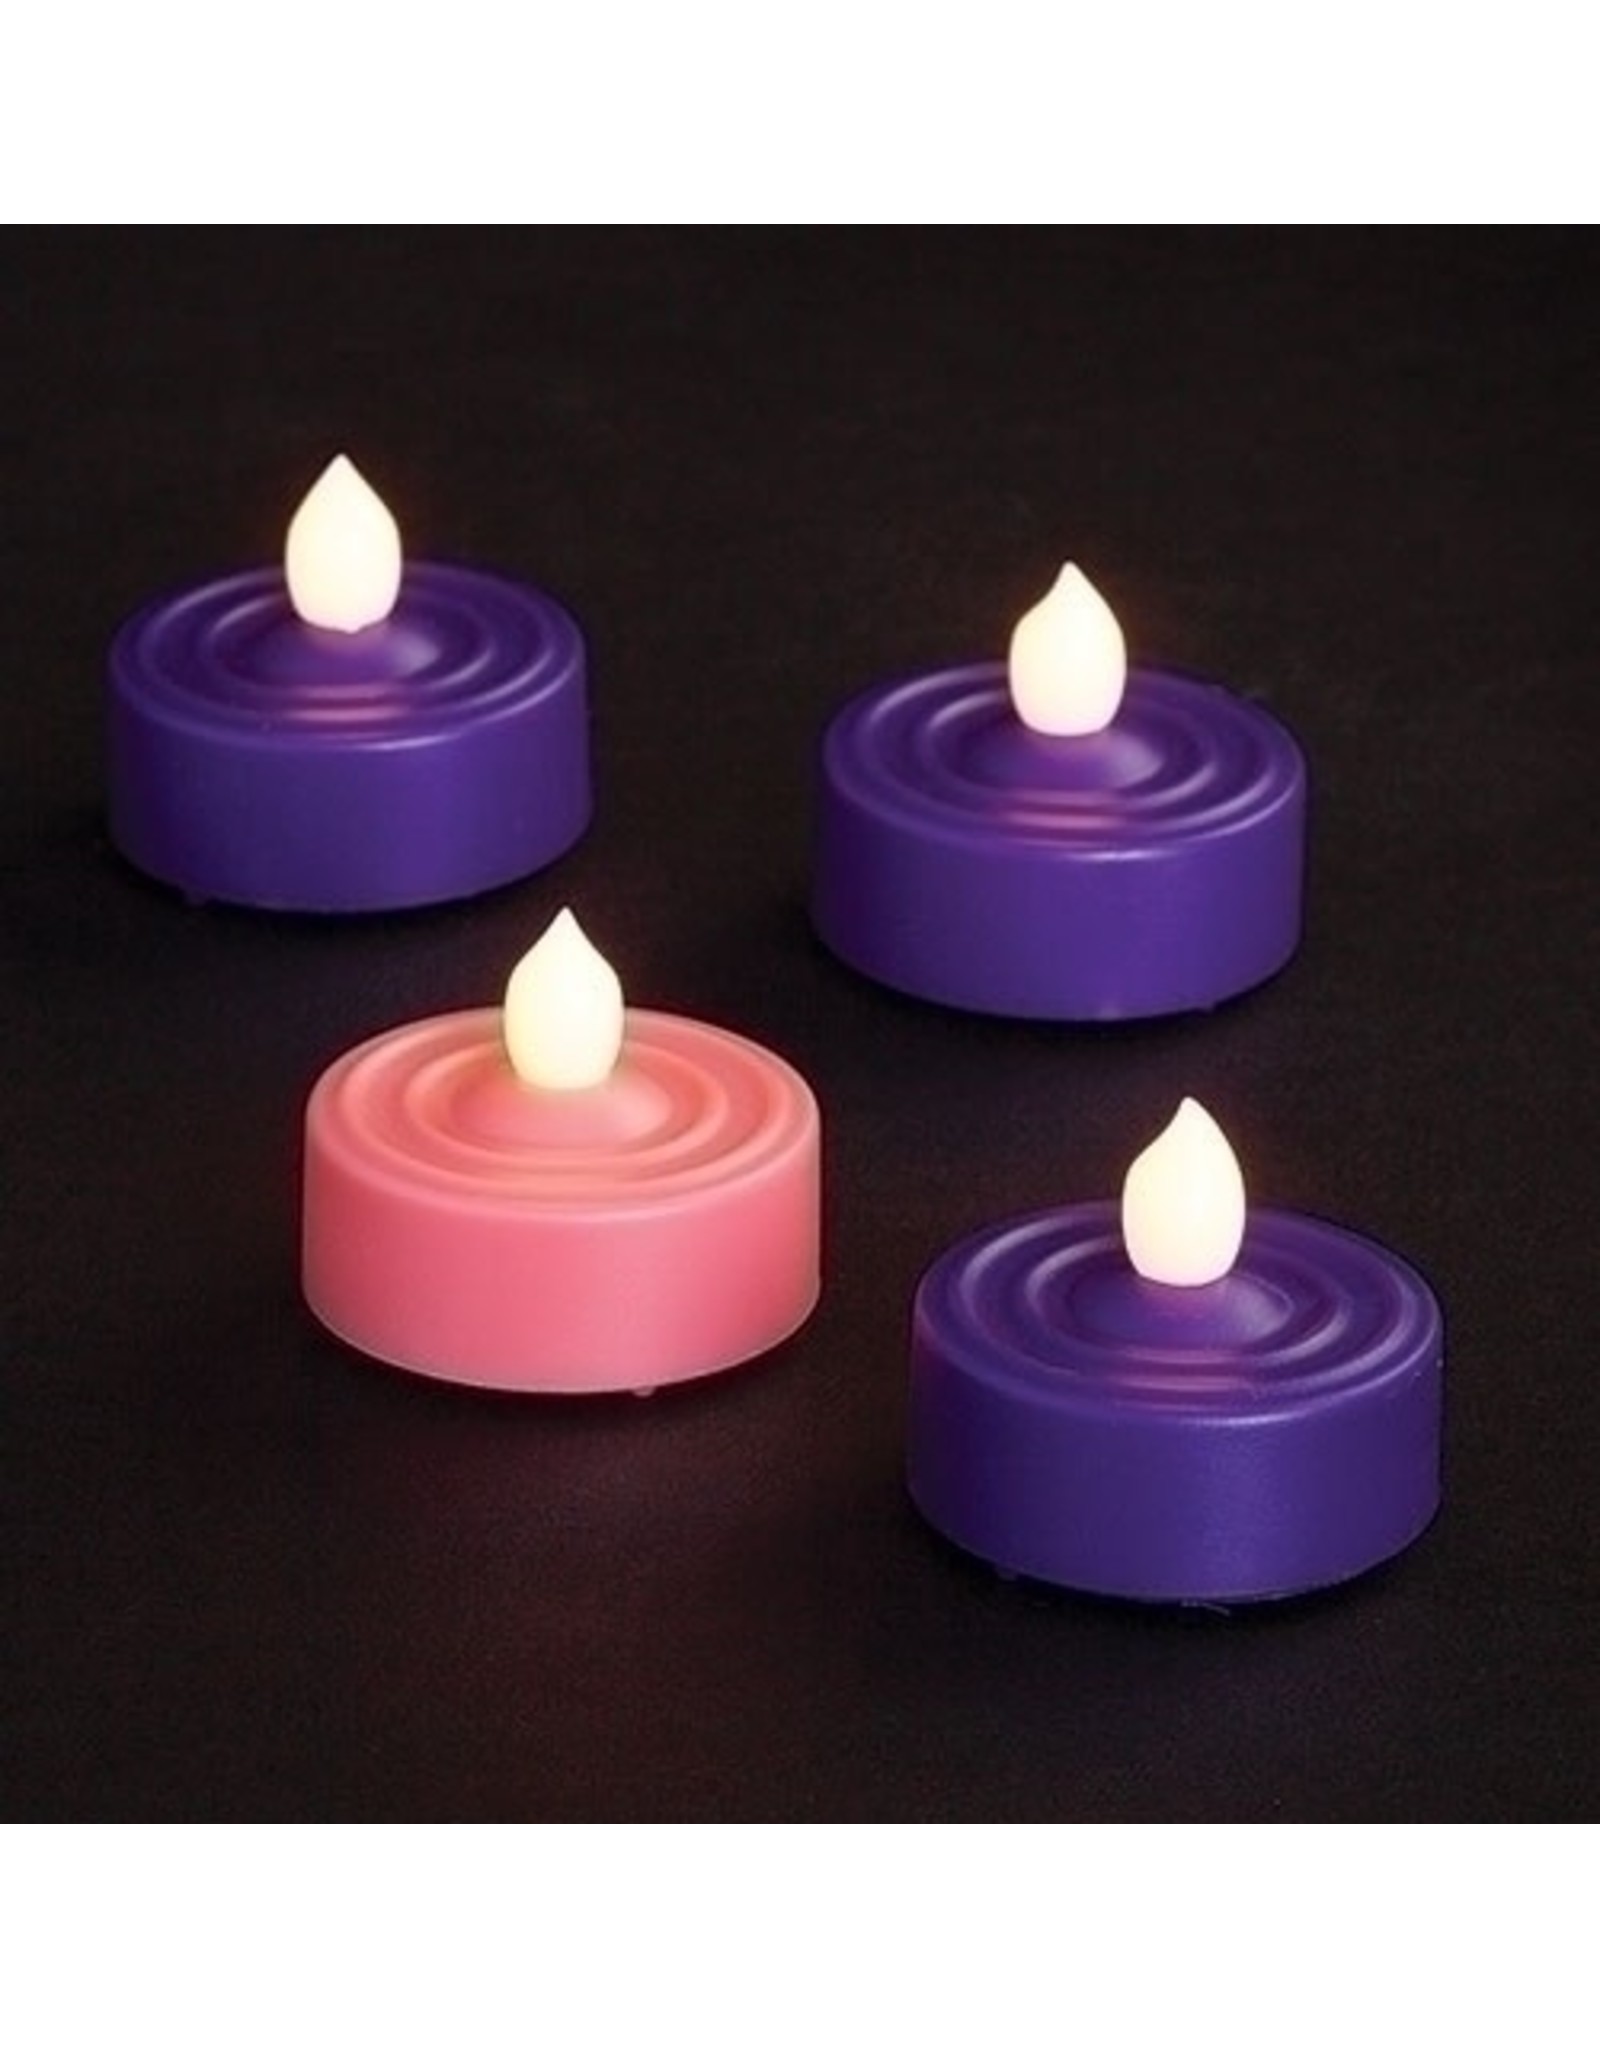 Roman Advent LED Tealights - 3 Purple, 1 Pink